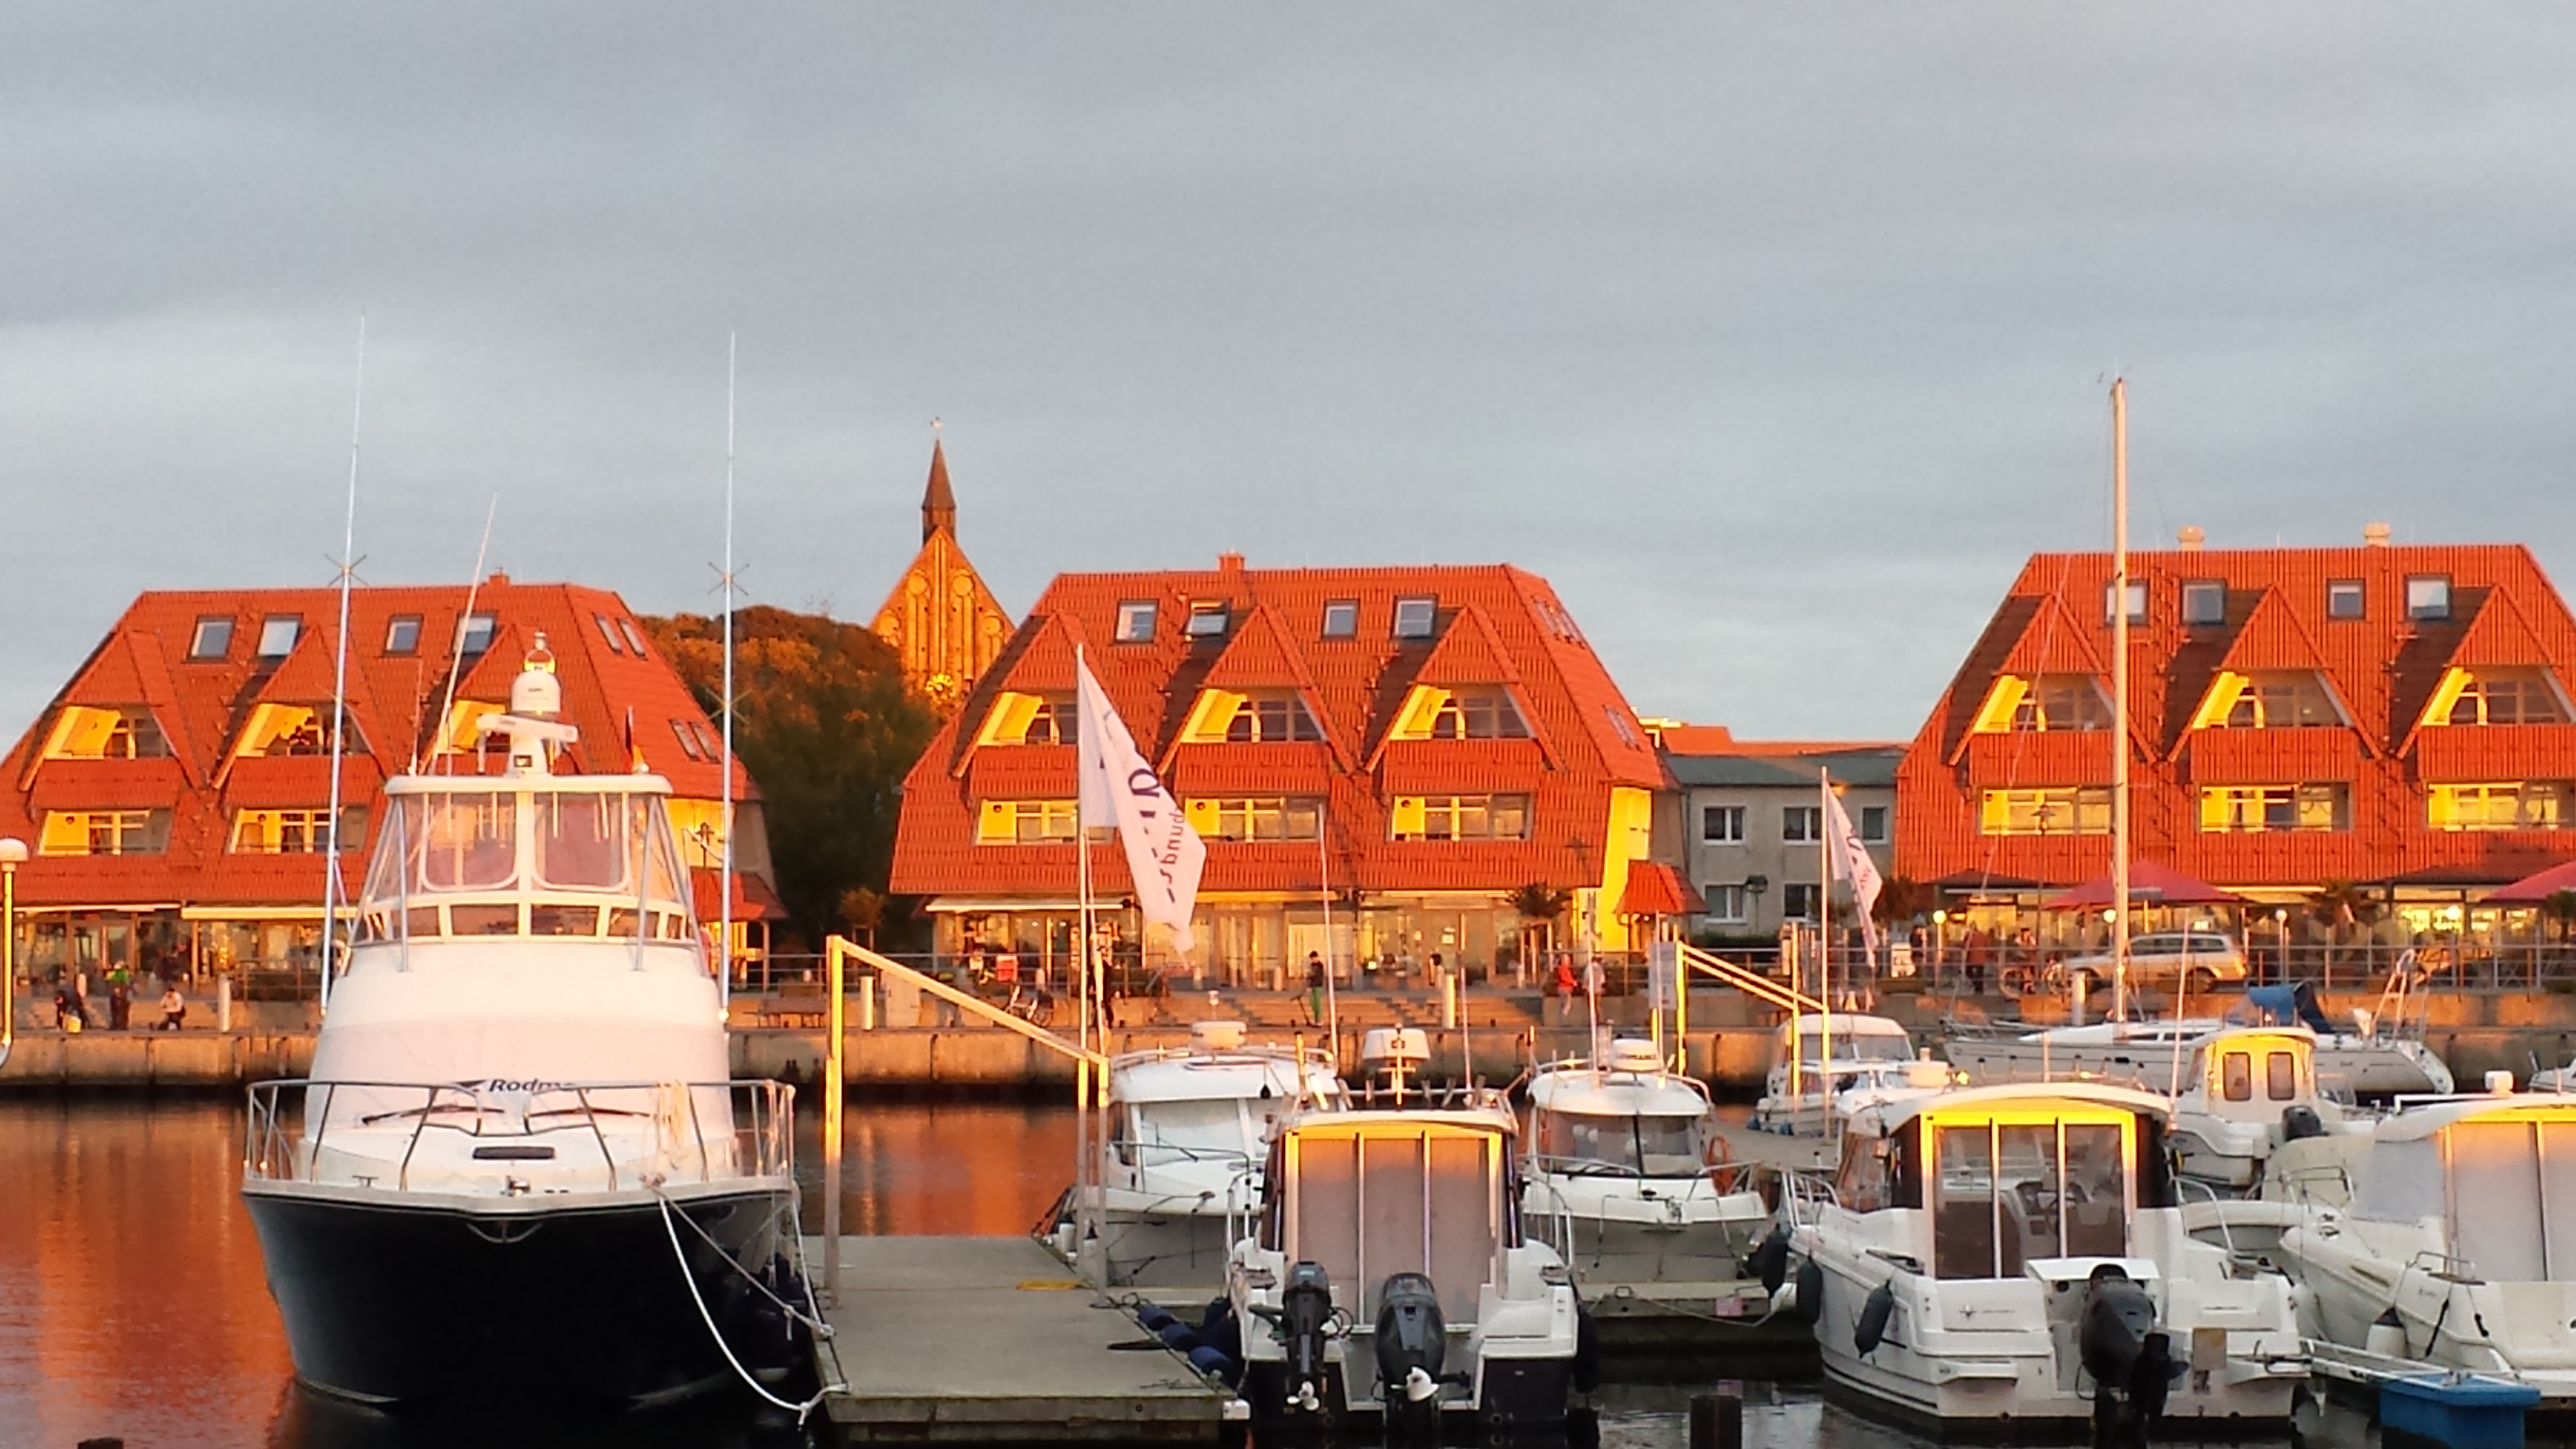 Wieker Hafen mit Geschäfte und Anlegestelle für Fahrgastschiffe z. B. nach Hiddensee, ca. 800 m vom Ferienhaus entfernt. Im Hintergrund die Kirche im Zentrum des Ortes